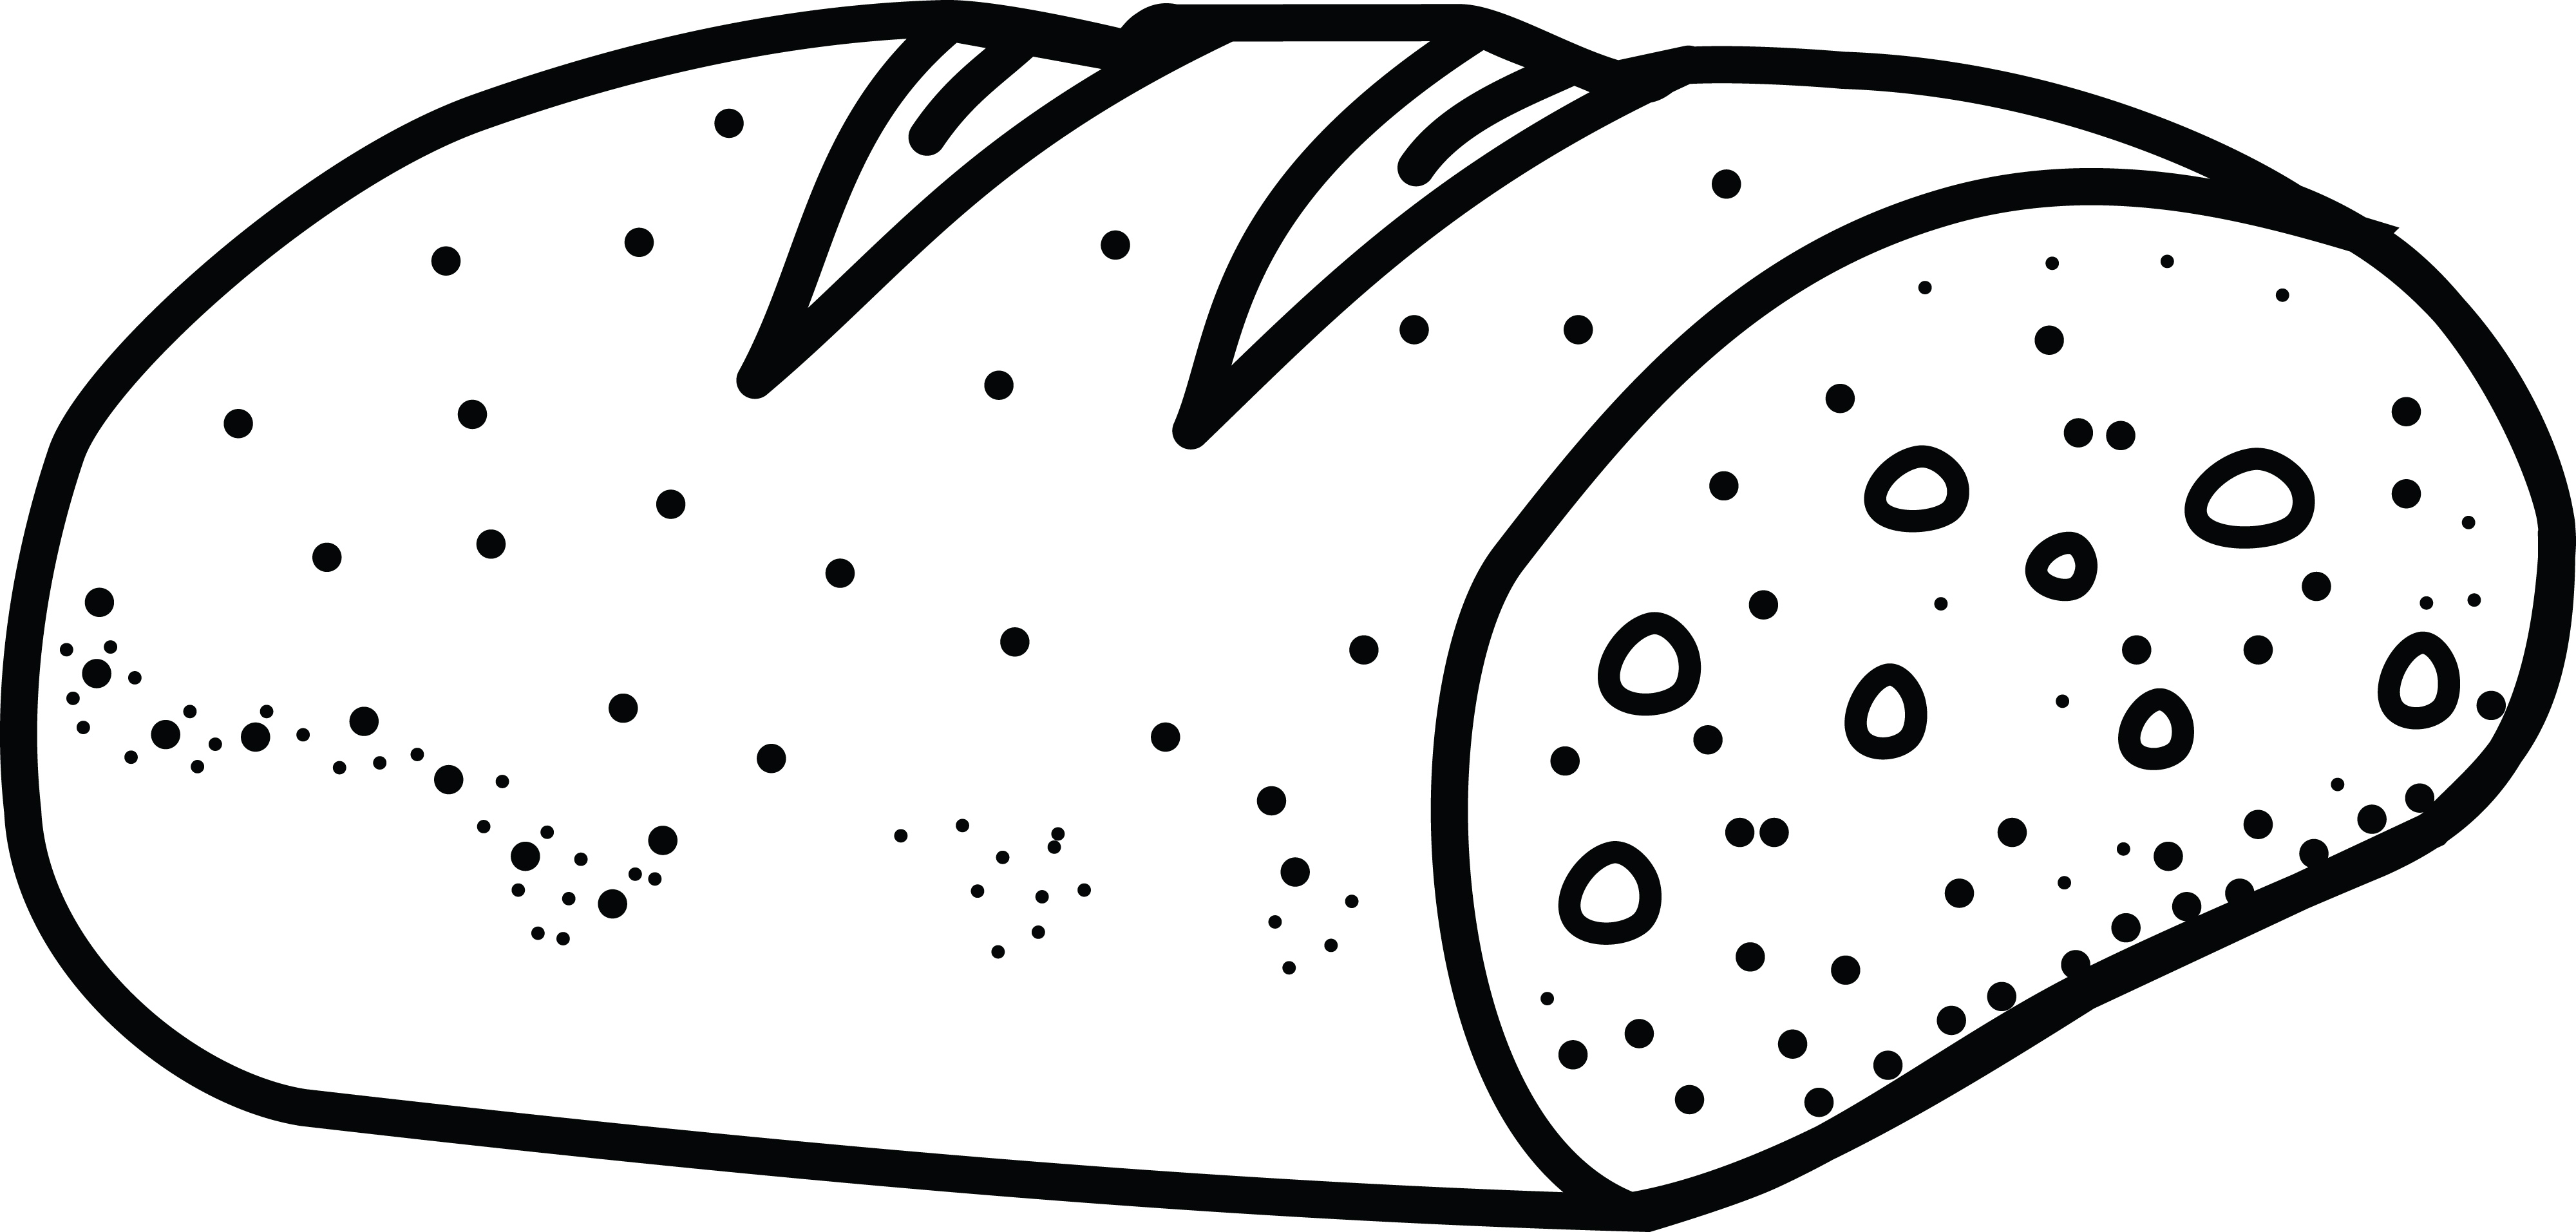 Color drawing pencil cartoon long bread food Vector Image